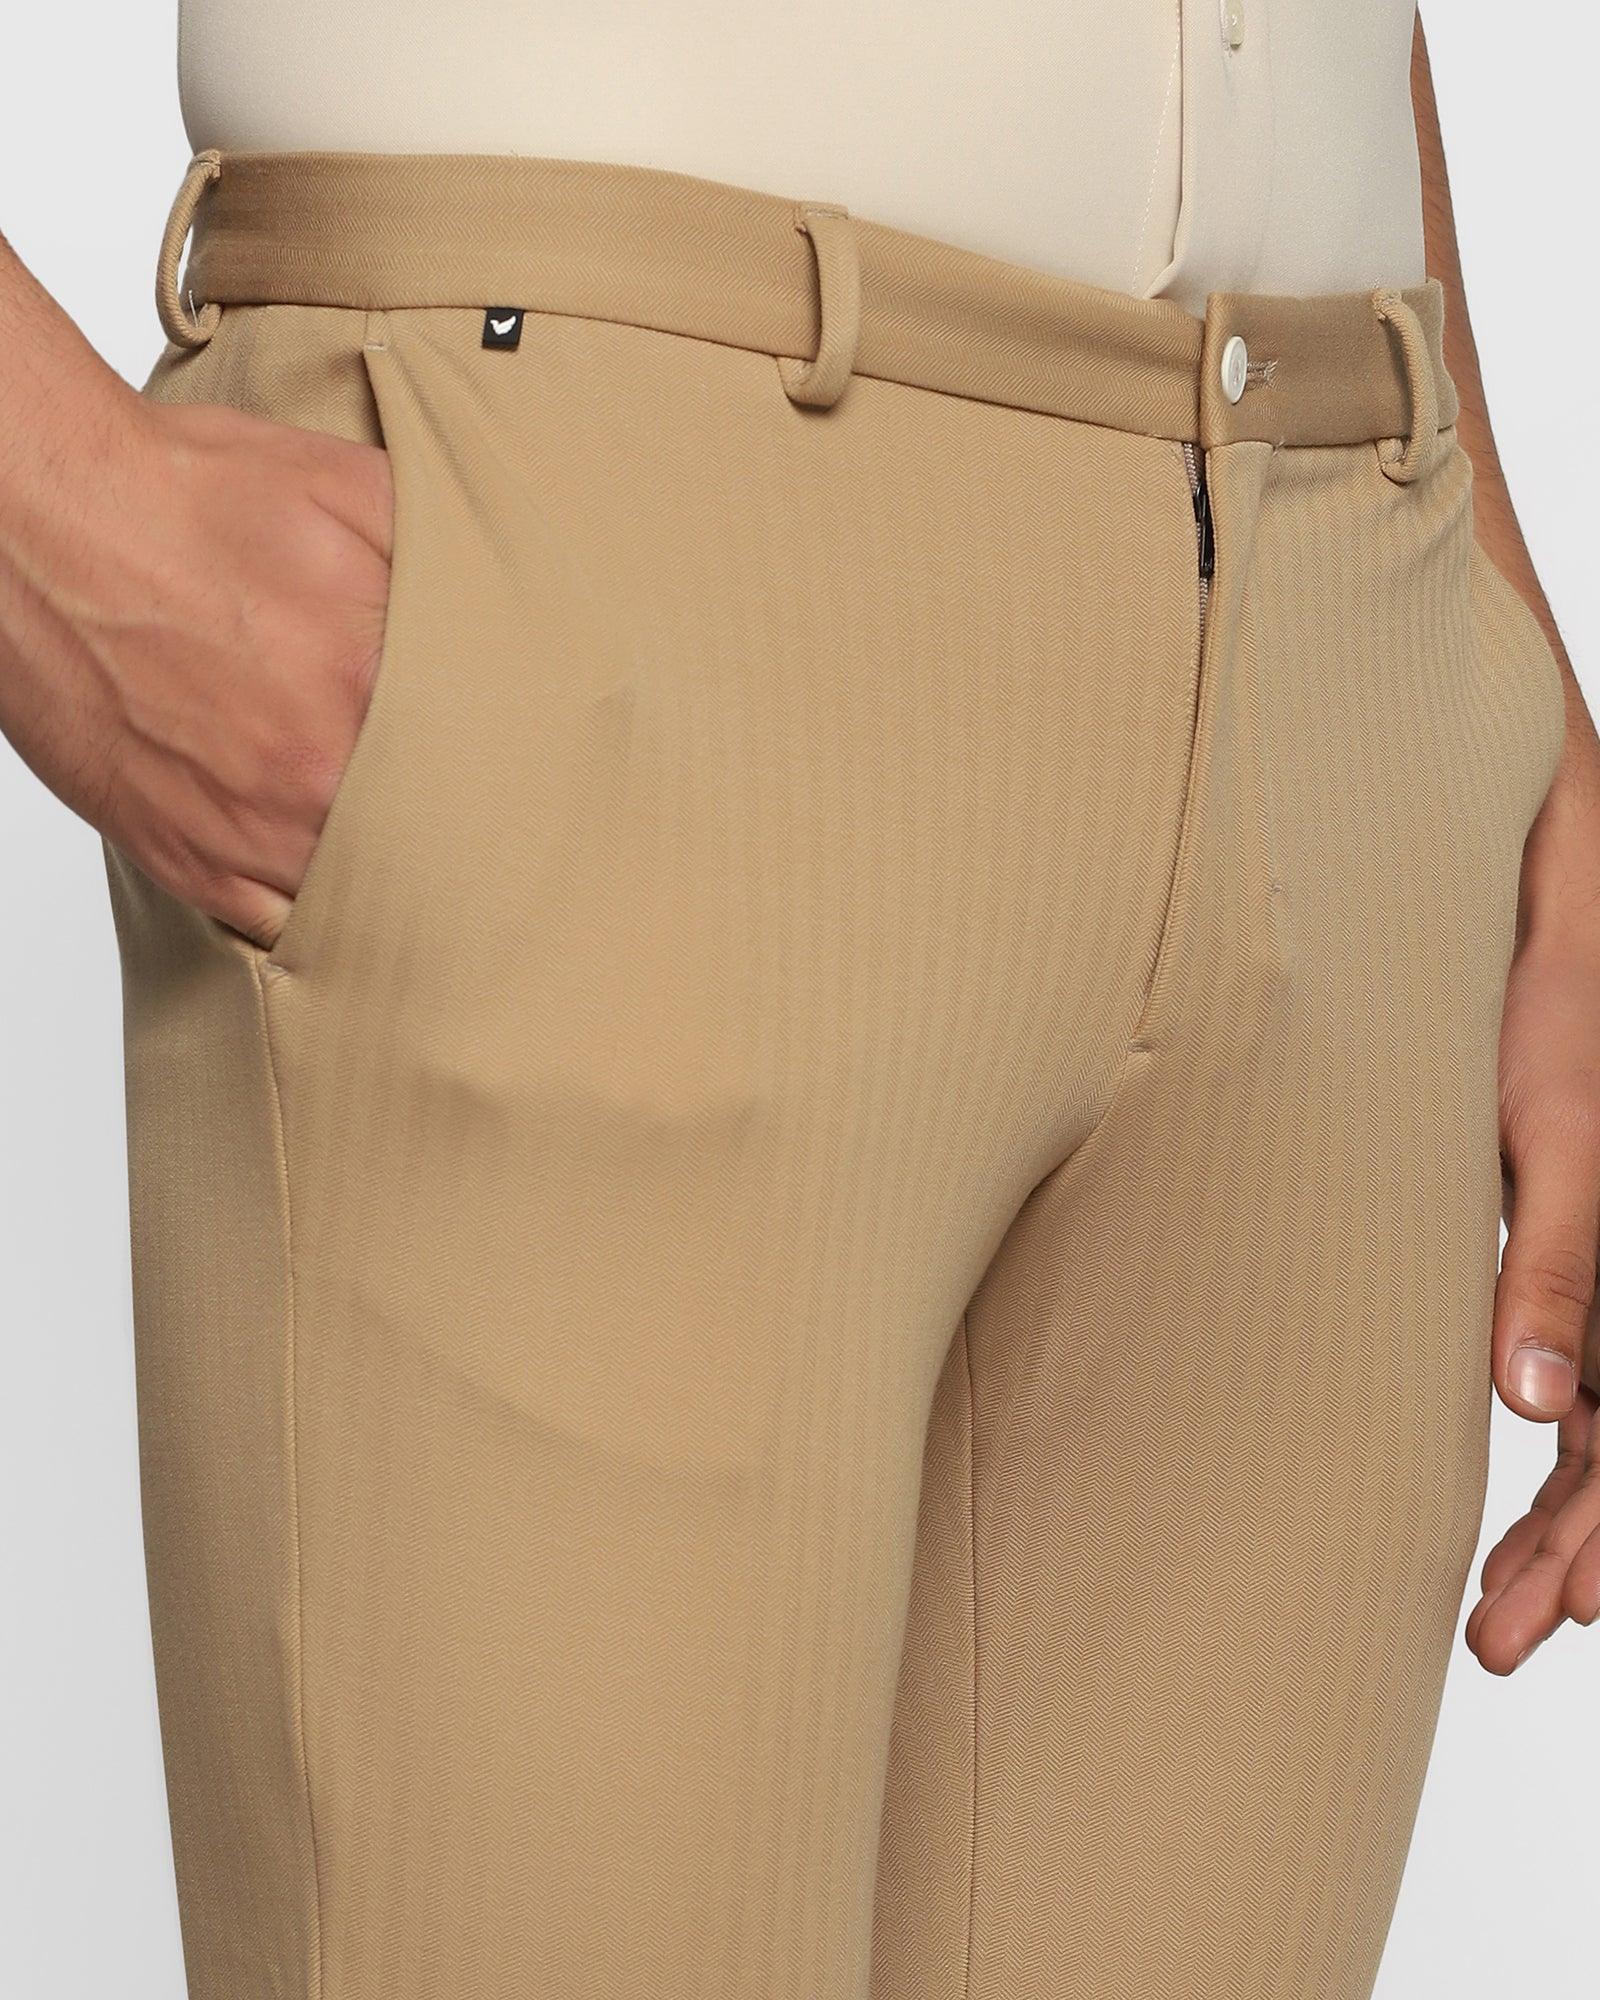 TechPro Slim Fit B-91 Formal Beige Striped Trouser - Aiden